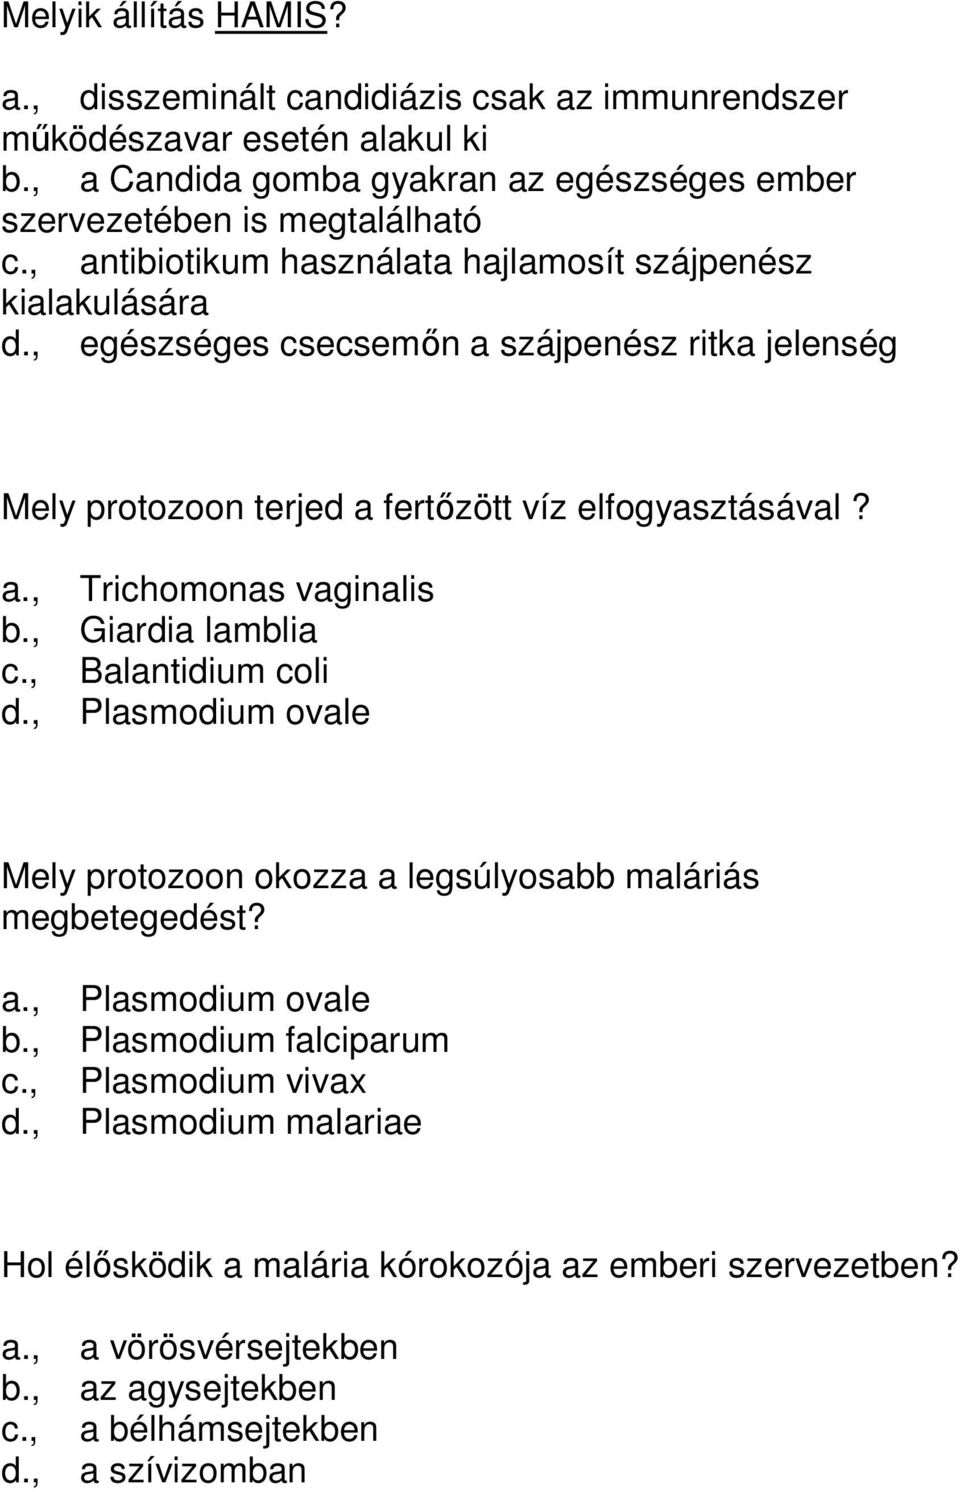 , Giardia lamblia c., Balantidium coli d., Plasmodium ovale Mely protozoon okozza a legsúlyosabb maláriás megbetegedést? a., Plasmodium ovale b., Plasmodium falciparum c.